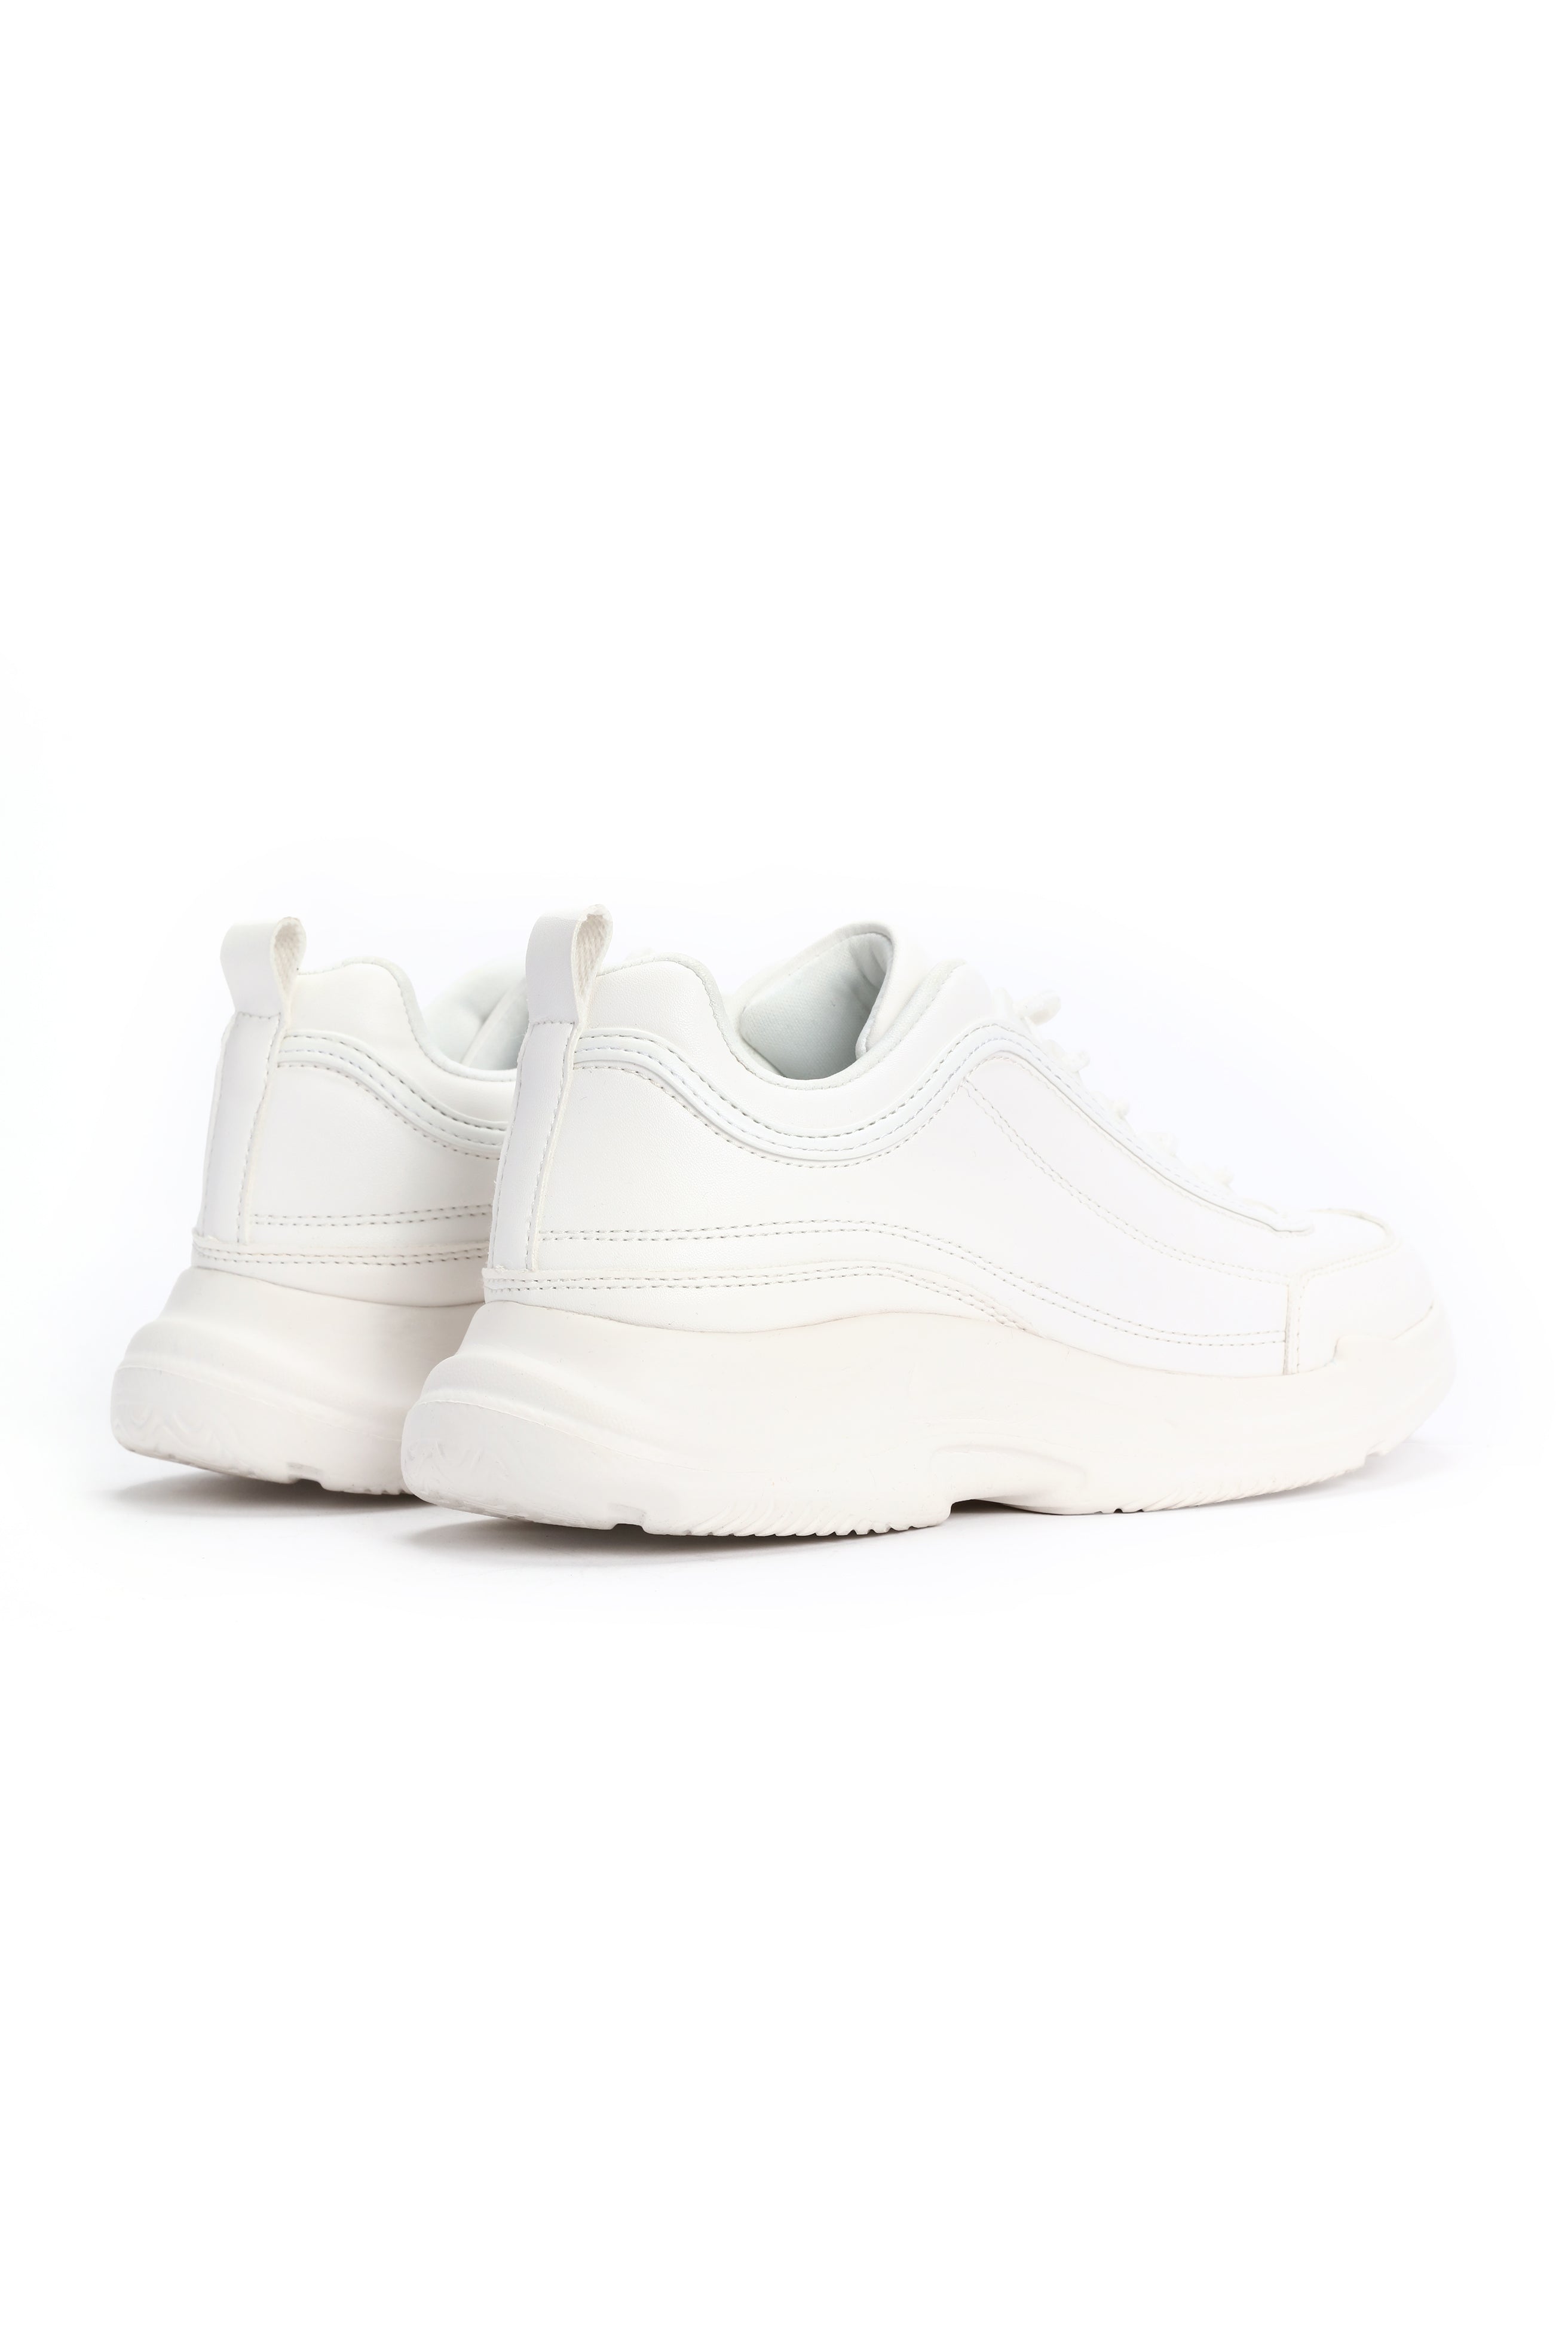 Born In The 90's Sneakers - White – Fashion Nova